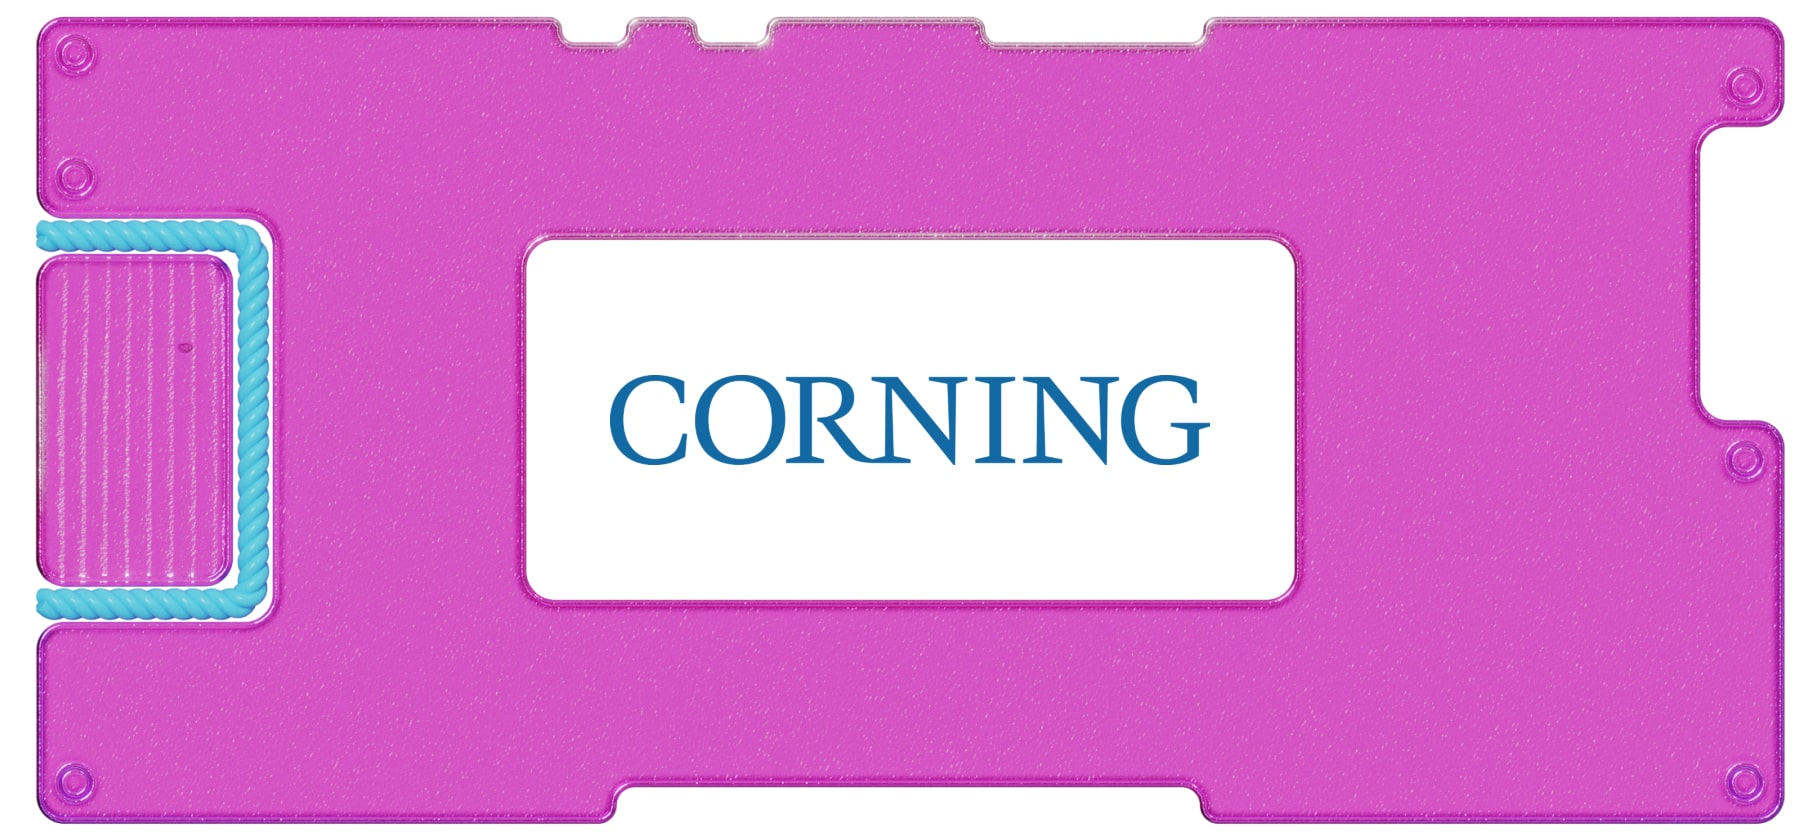 Инвестидея: Corning, потому что заводы не стоят без дела